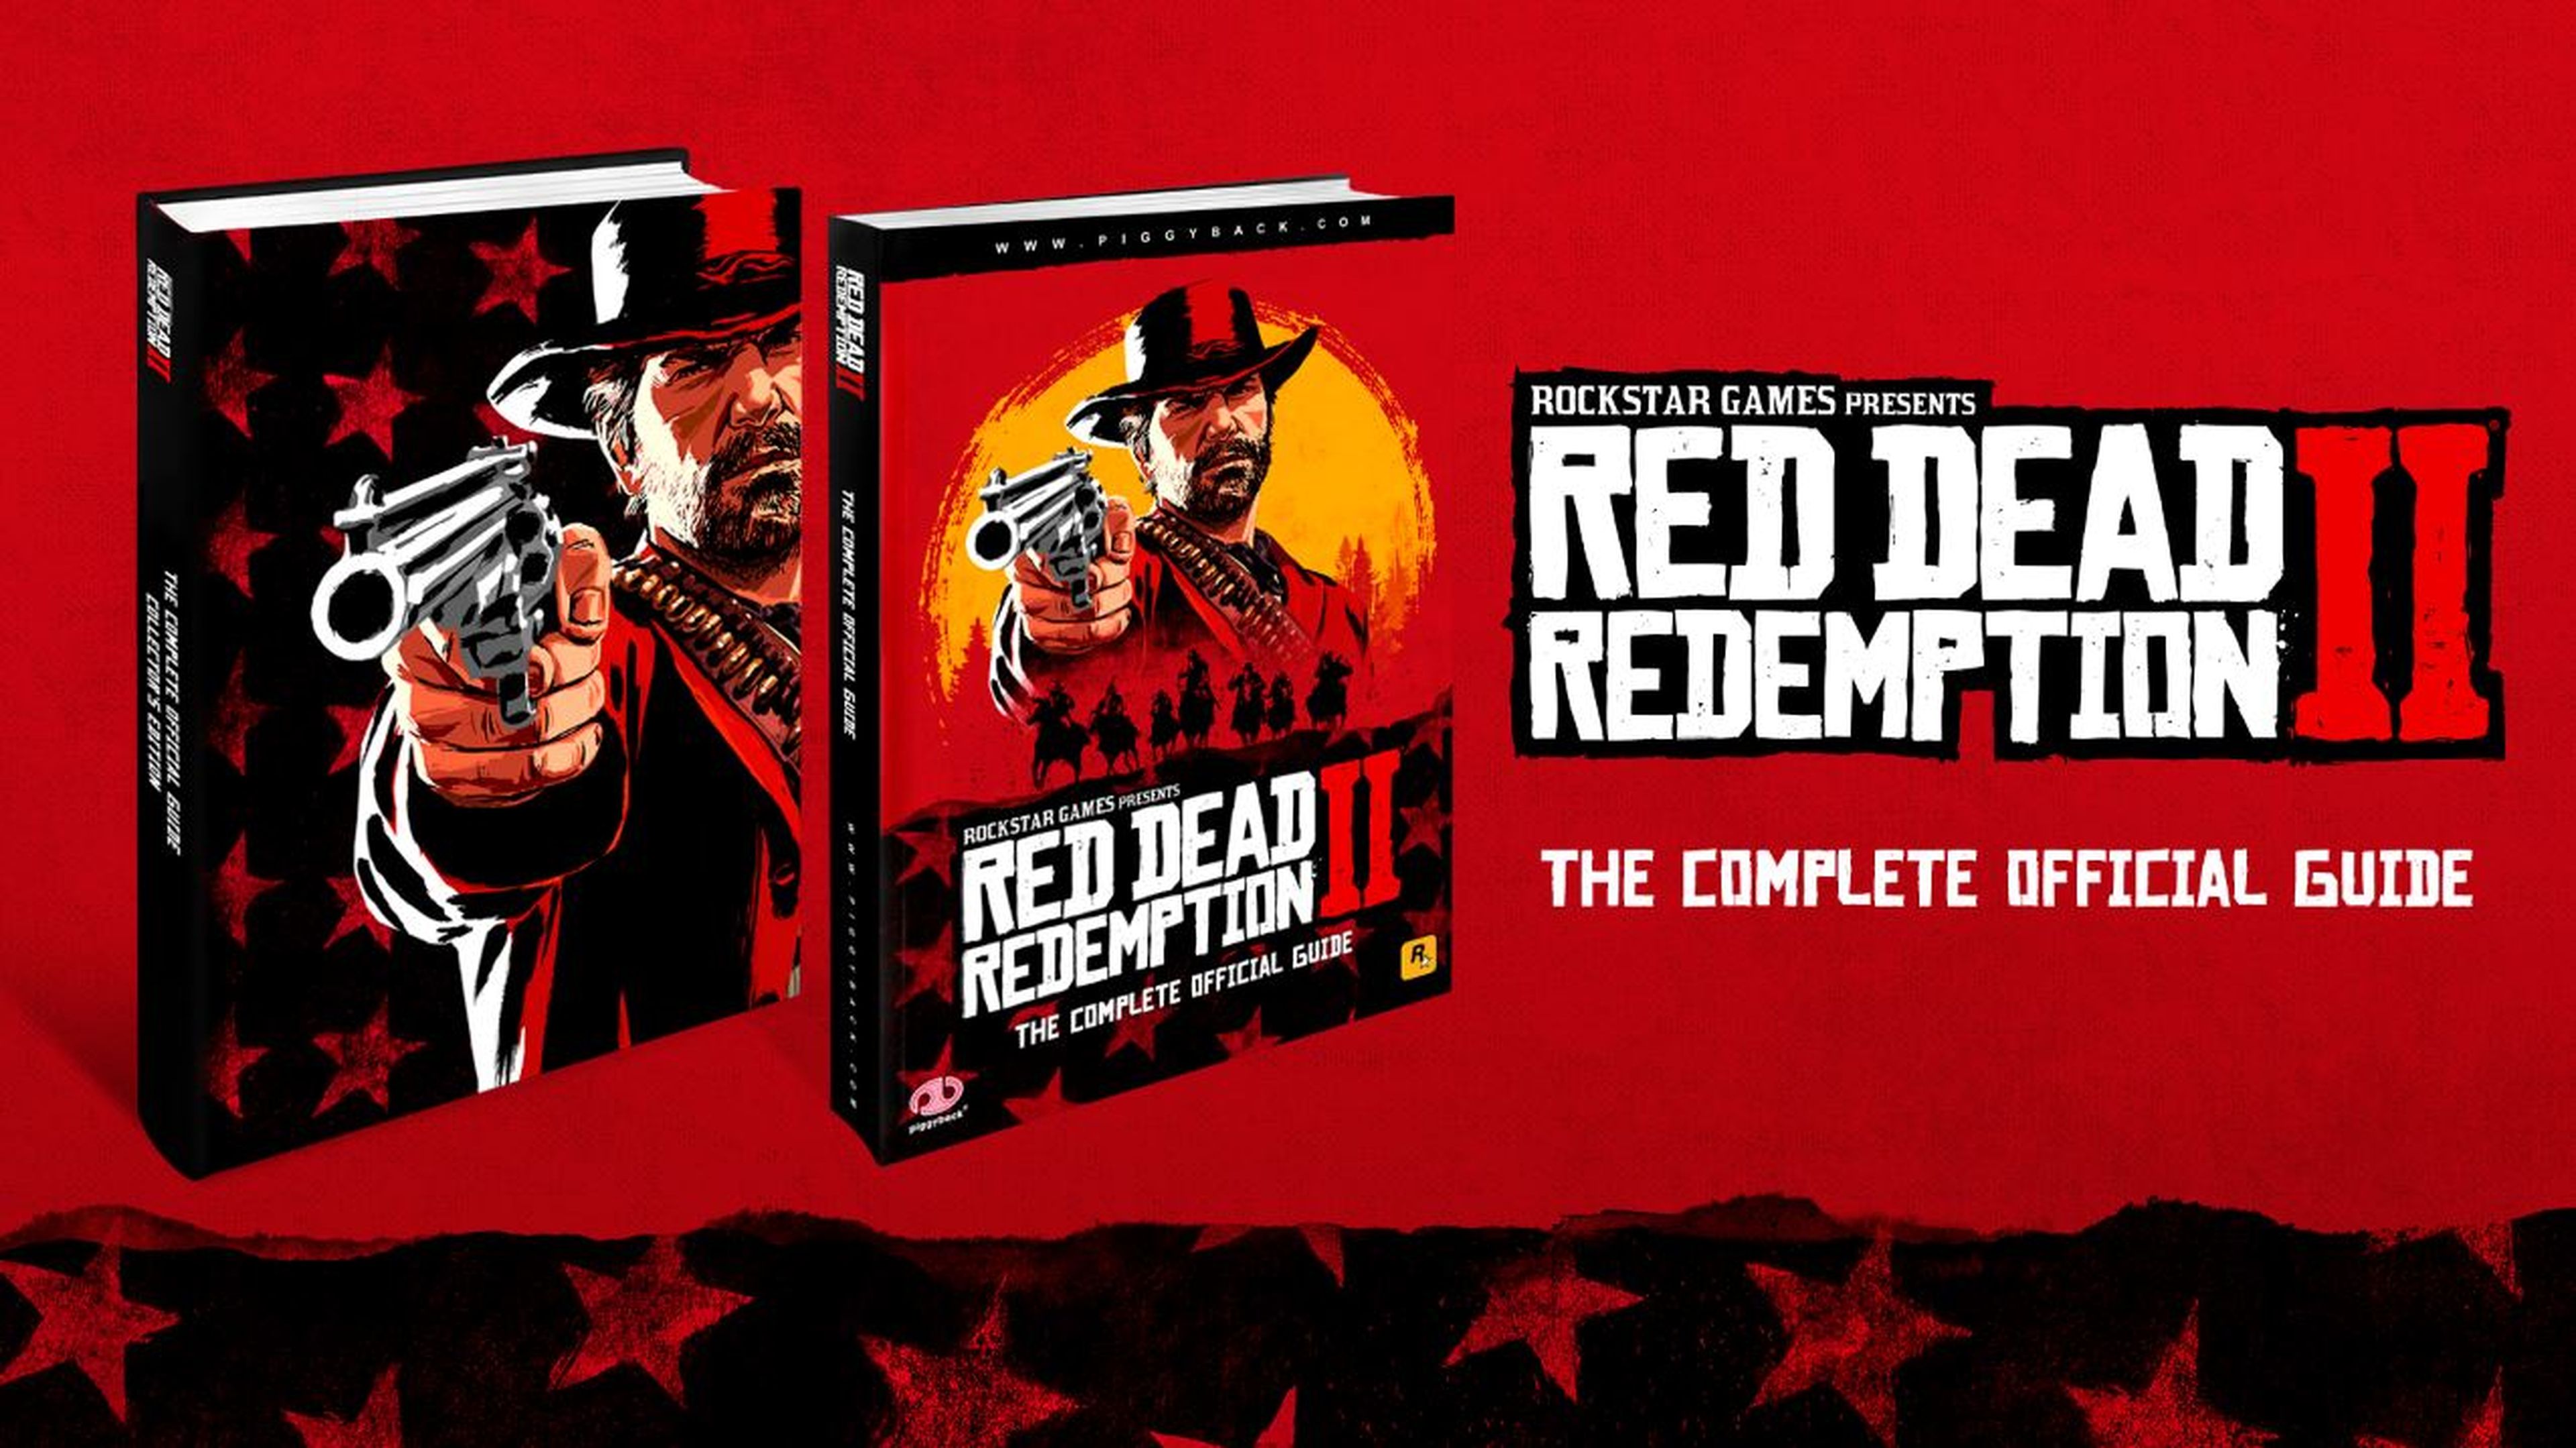 Ediciones y merchandising de Red Dead Redemption 2 en GAME